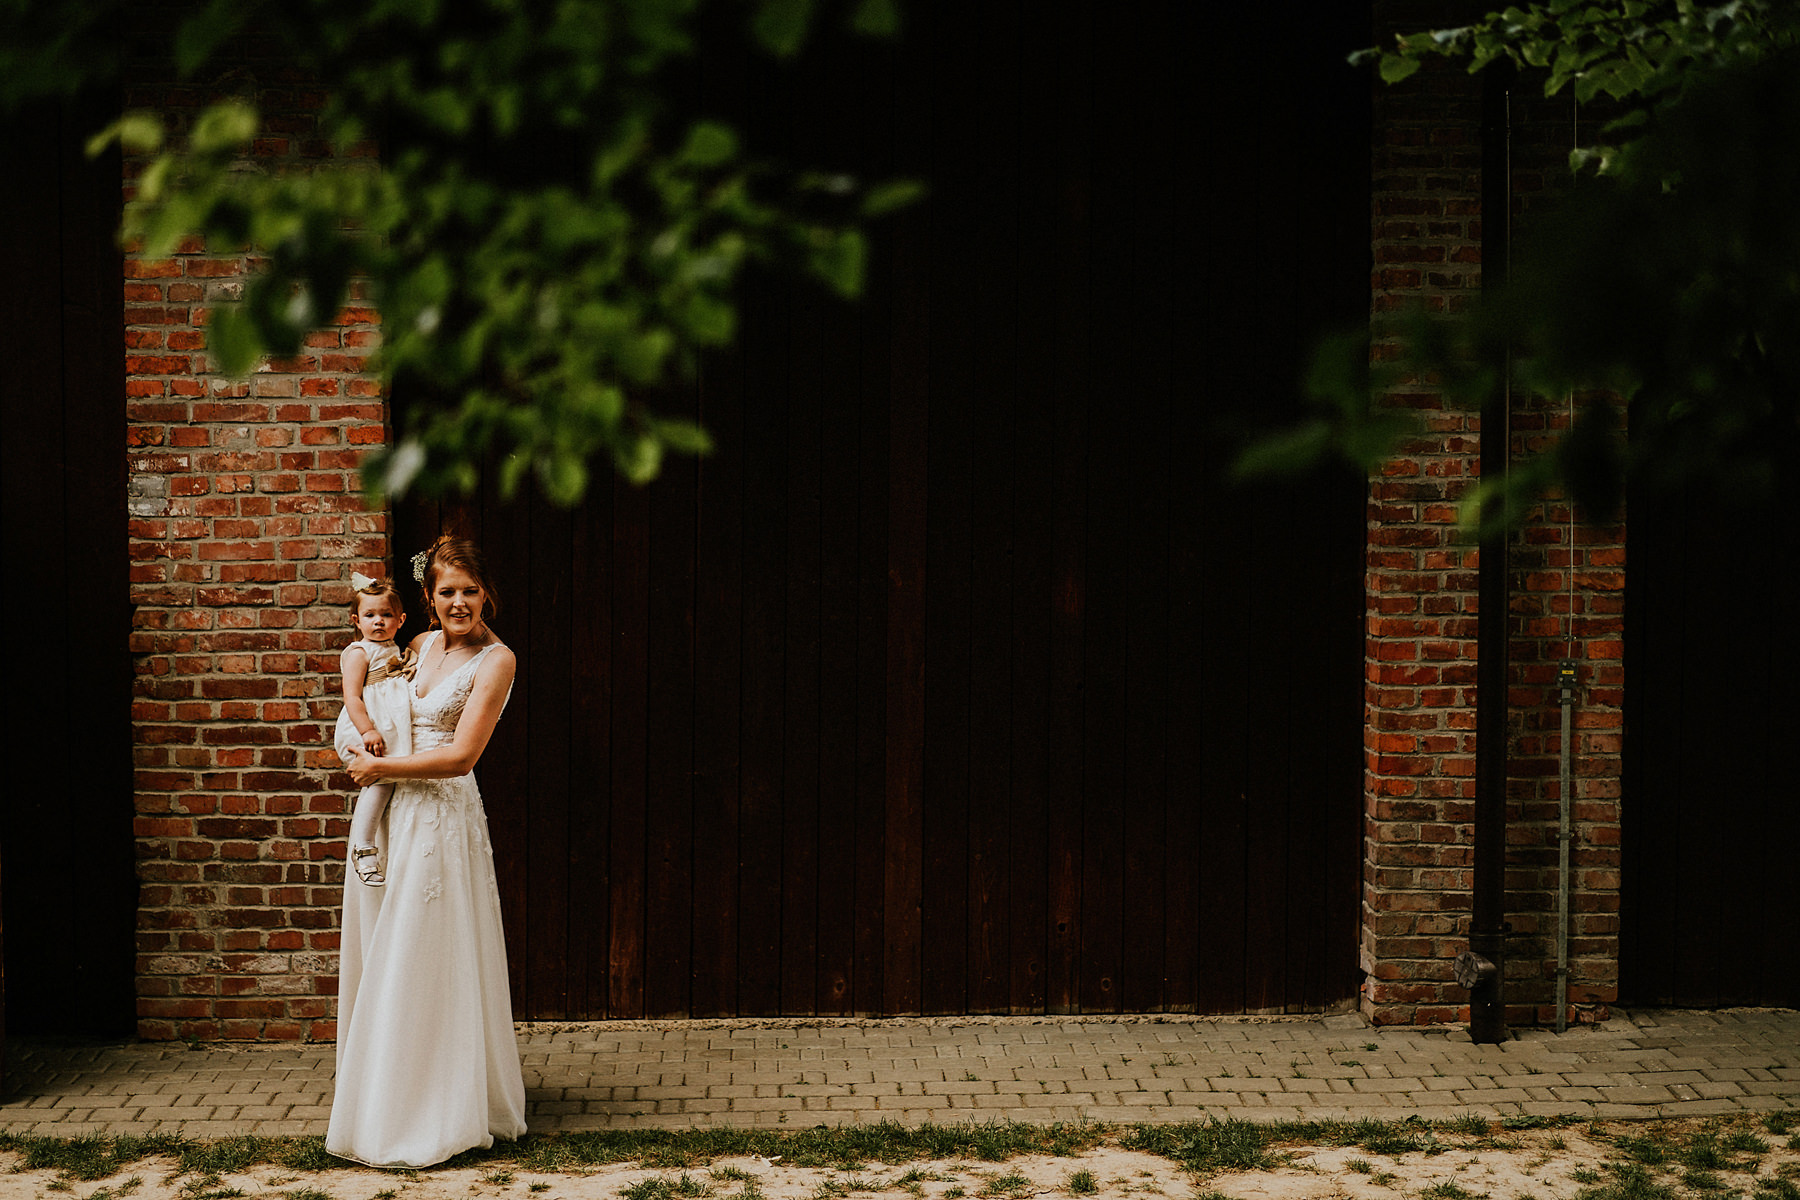 086 stodola ciezkowice wesele kasna dolna fotograf slubny krakow wedding photographer karol nycz